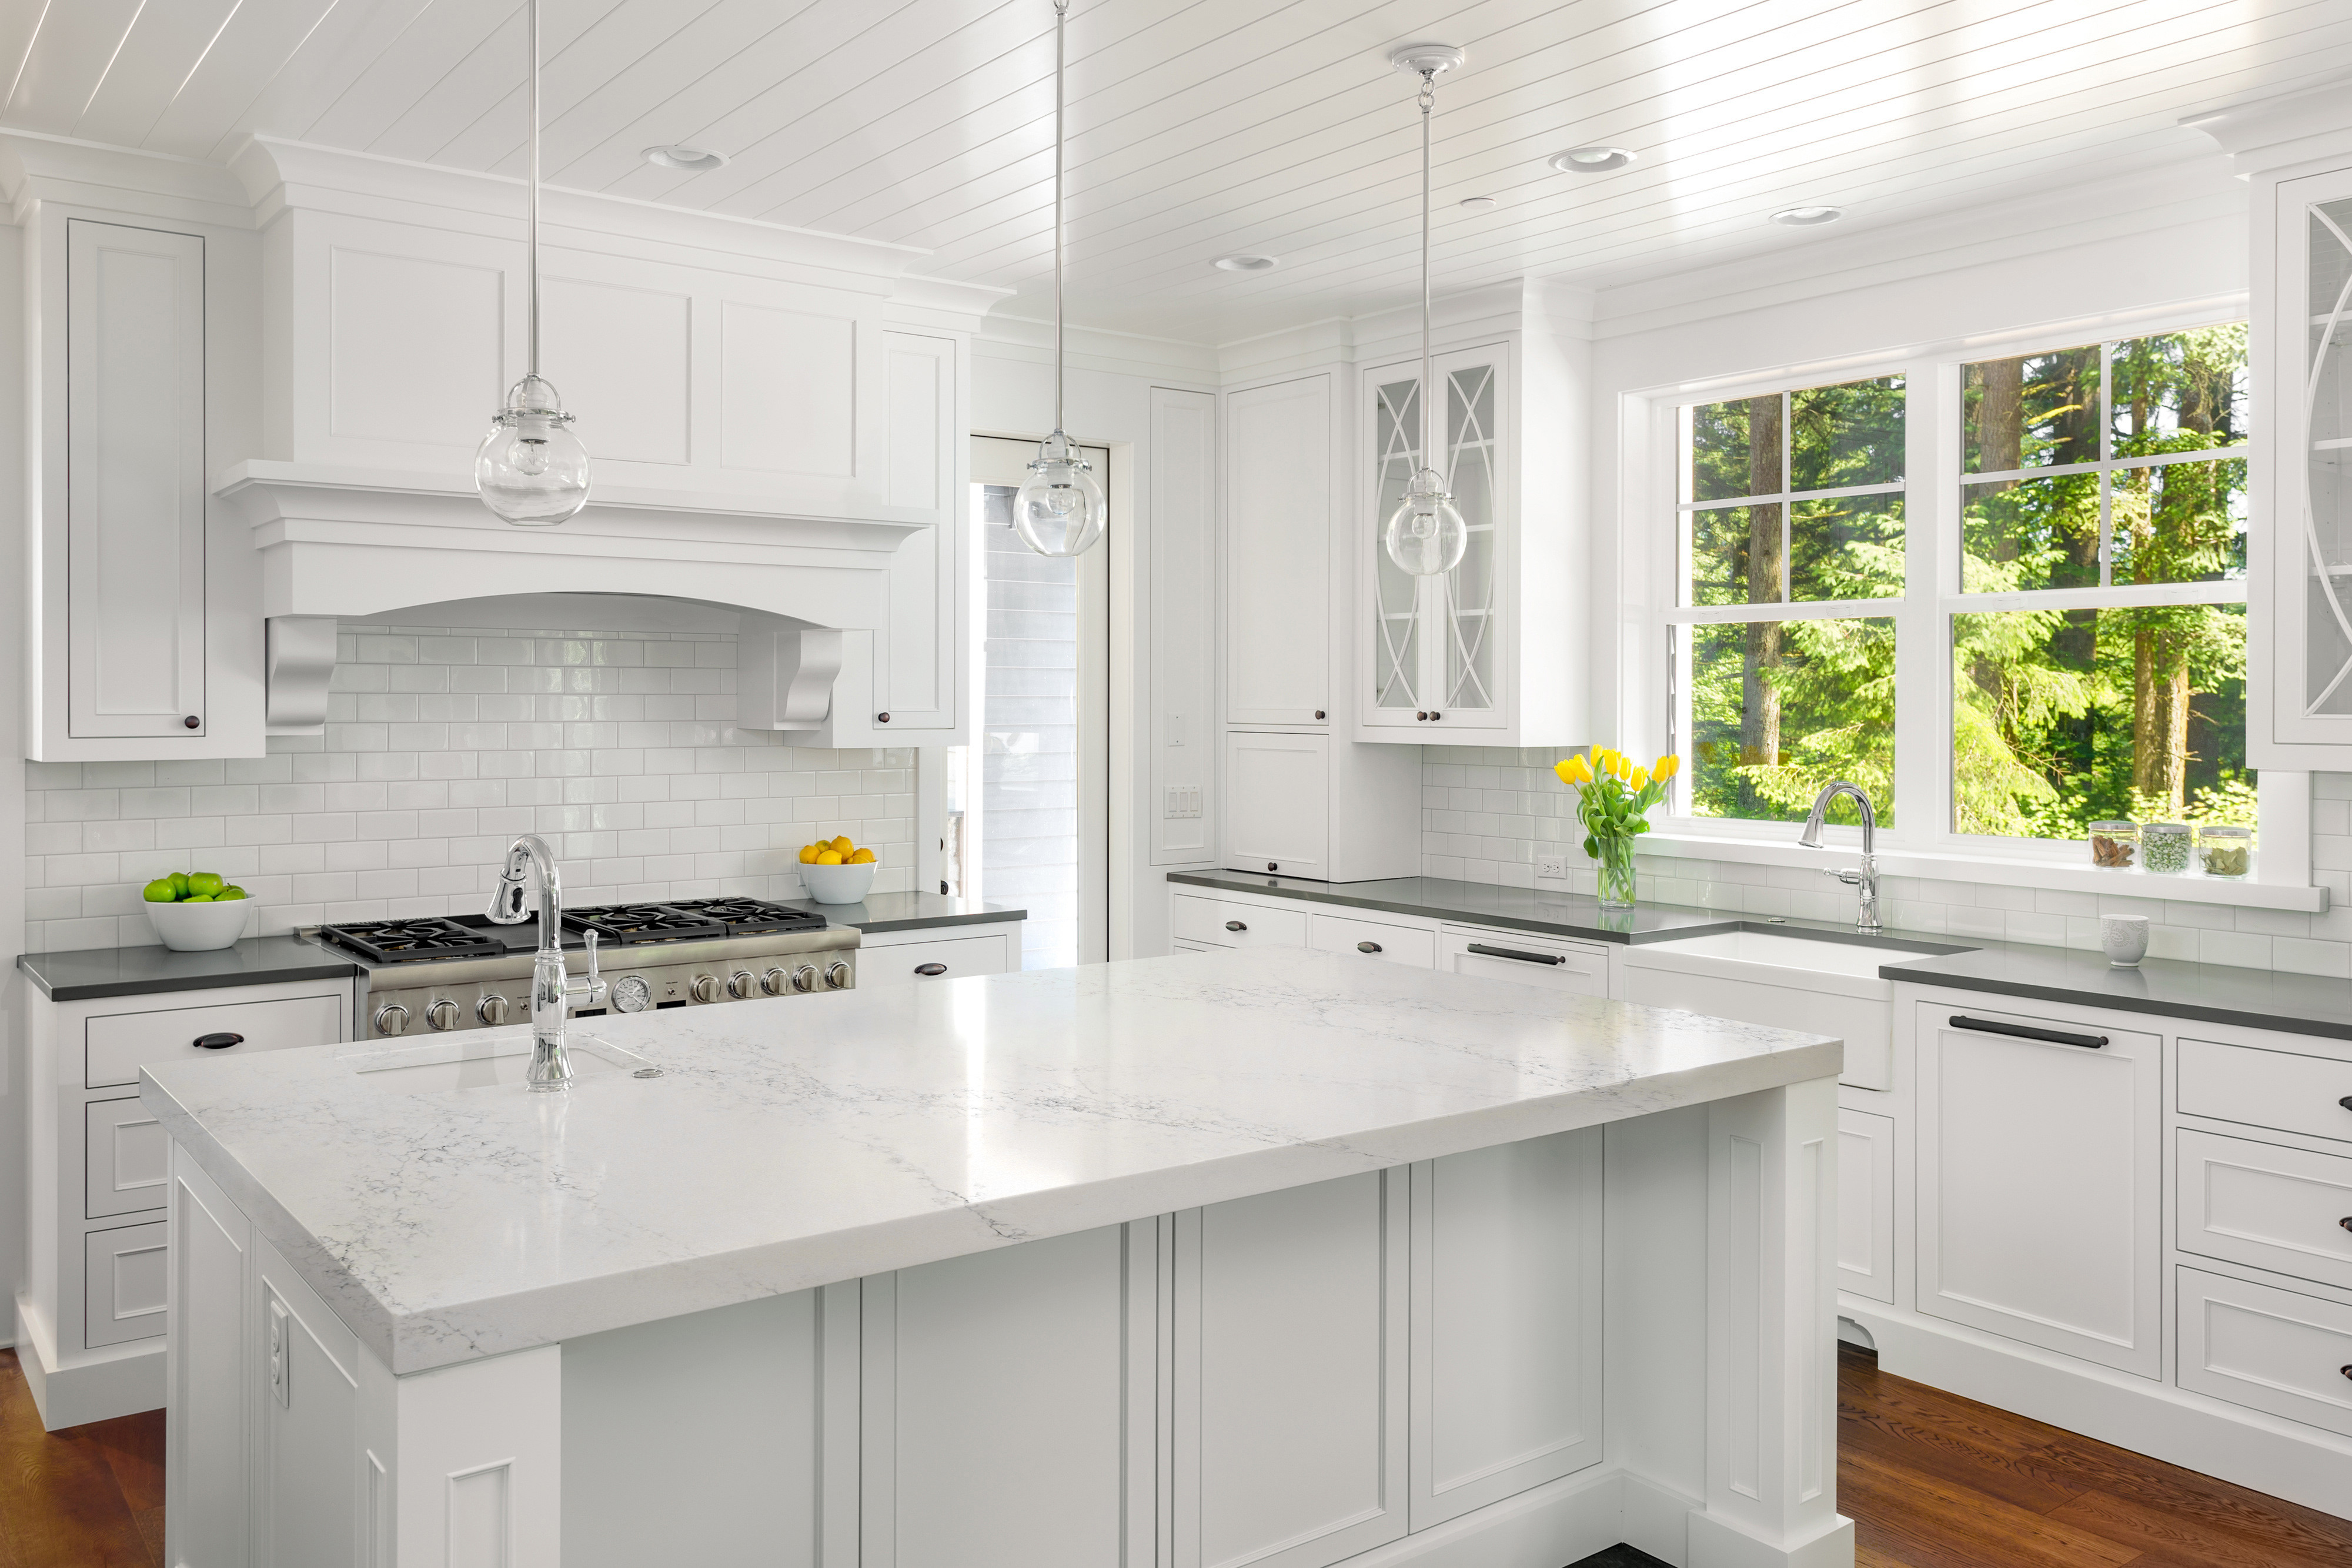 سنگ سفید کوارتز Calacatta با رنگ سفید و شیشه های Nsf برای بالای آشپزخانه